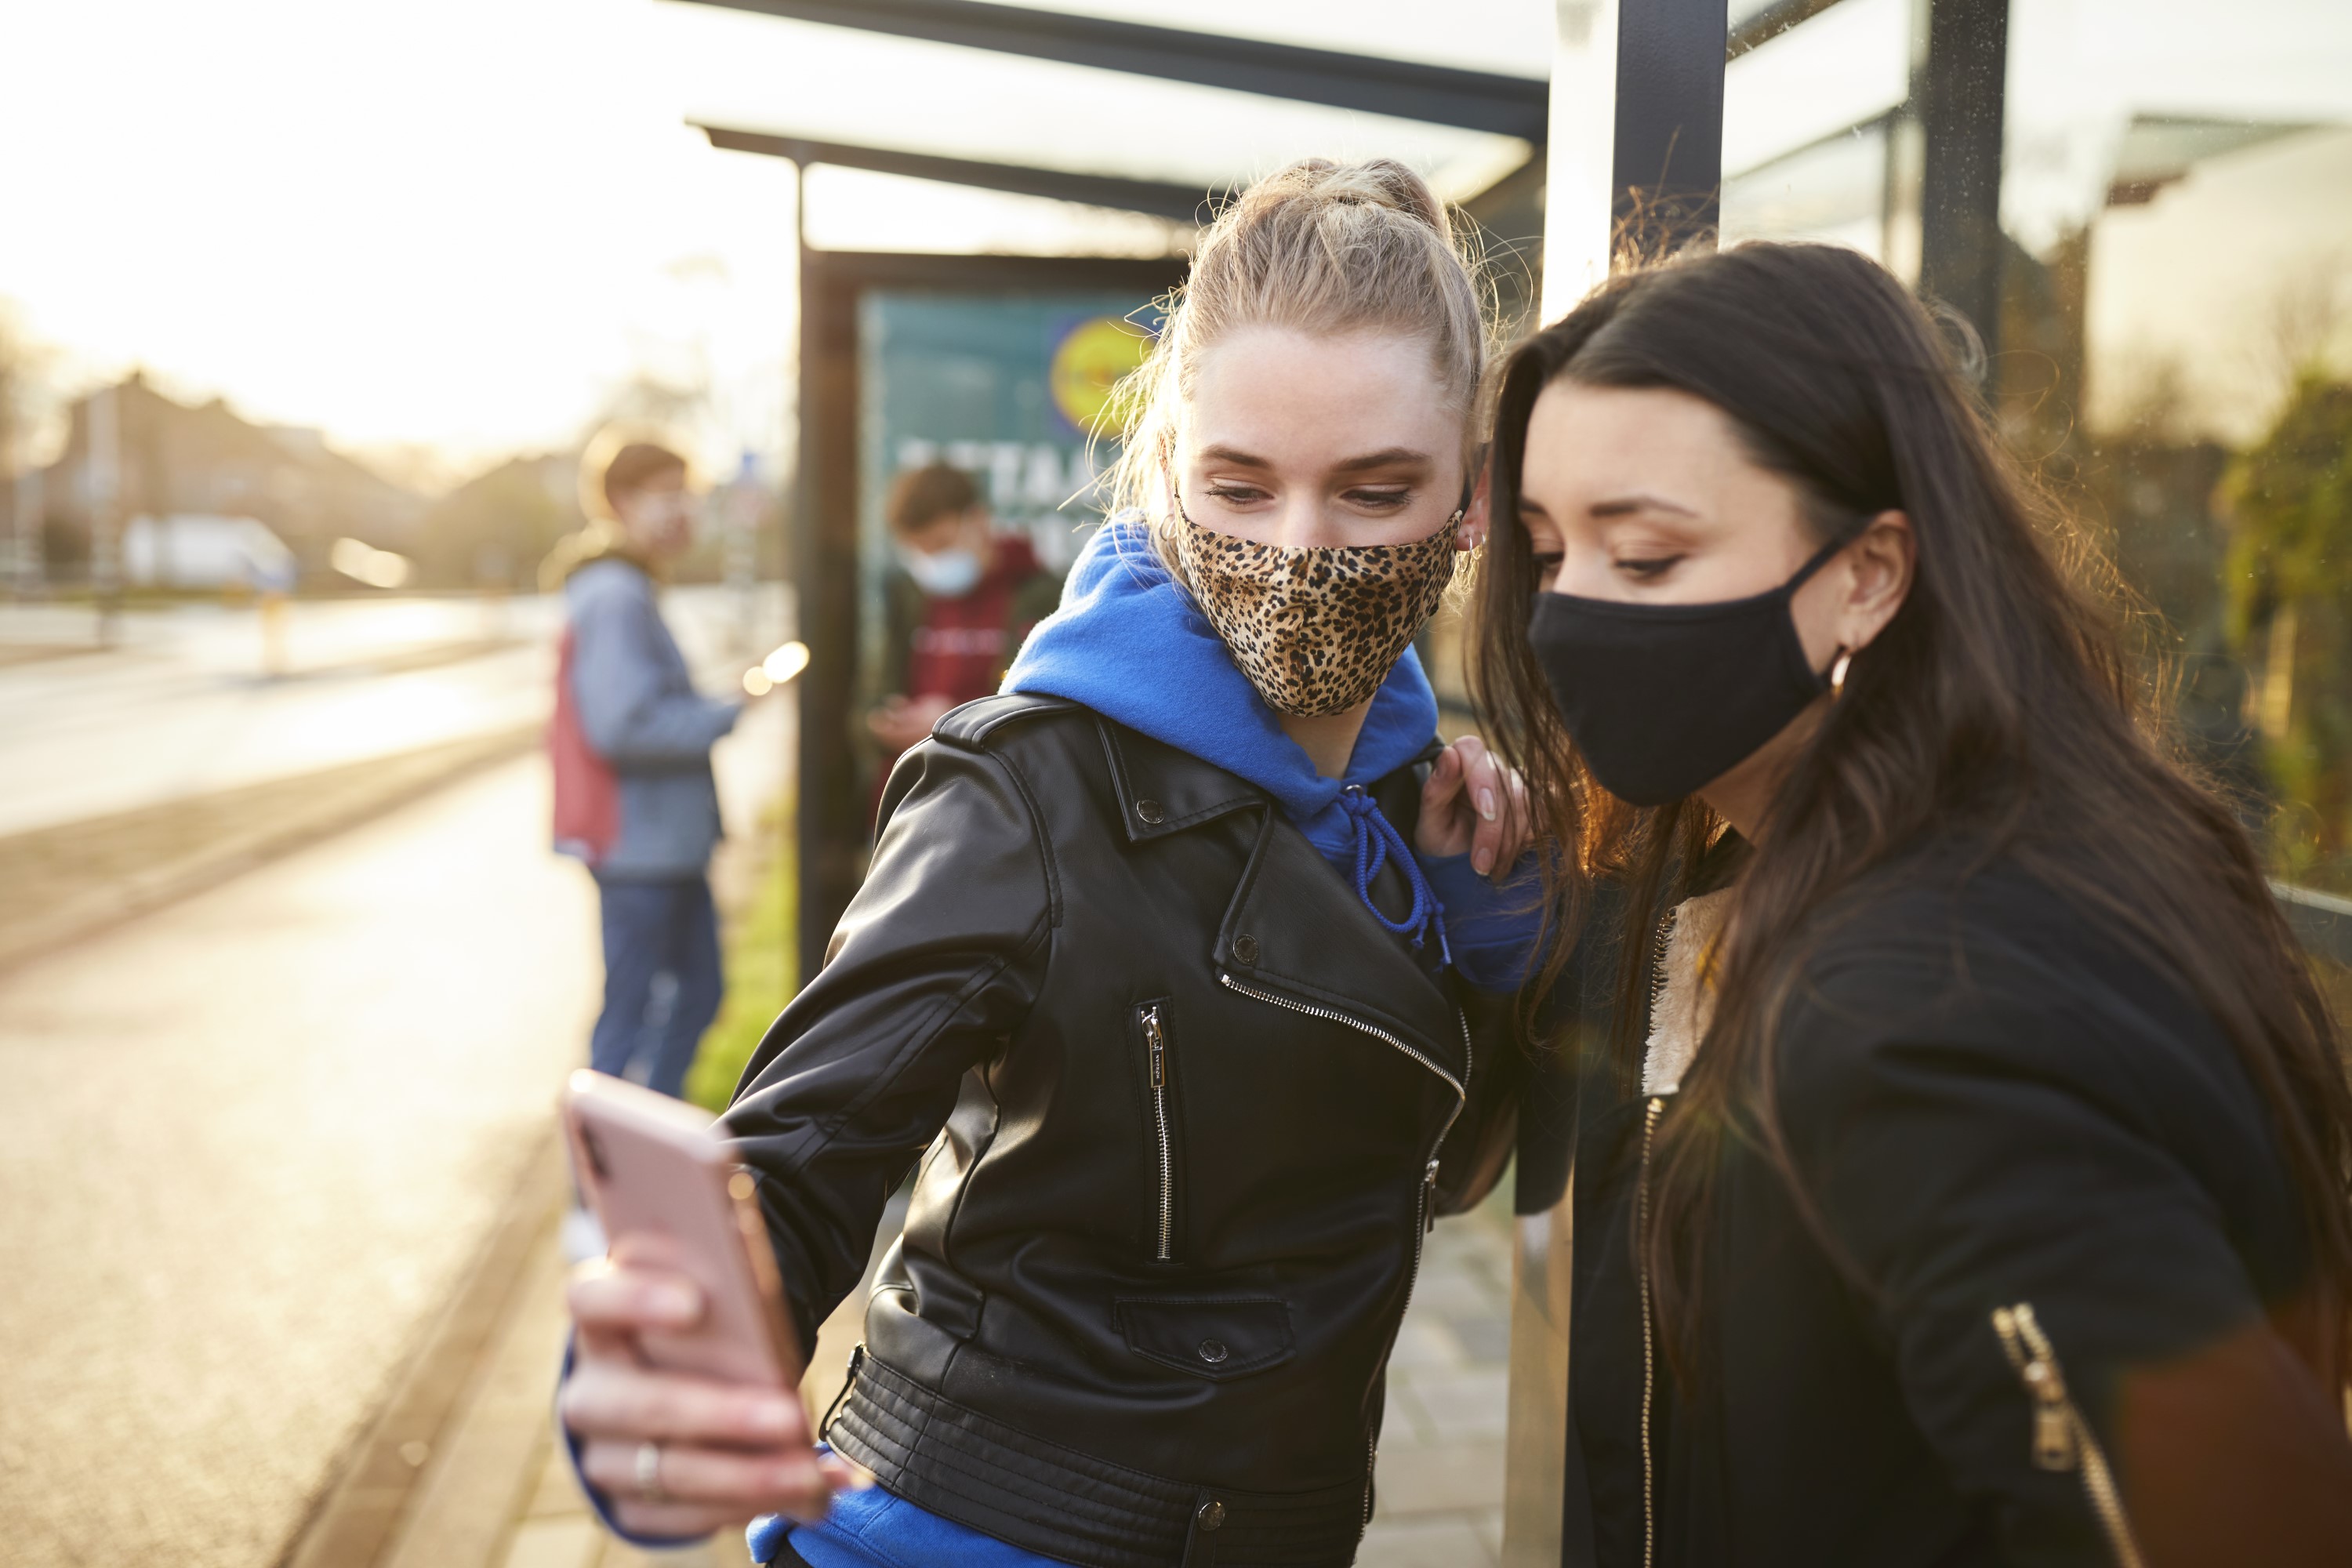 CitoLab - twee leerlingen maken selfie bij bushokje